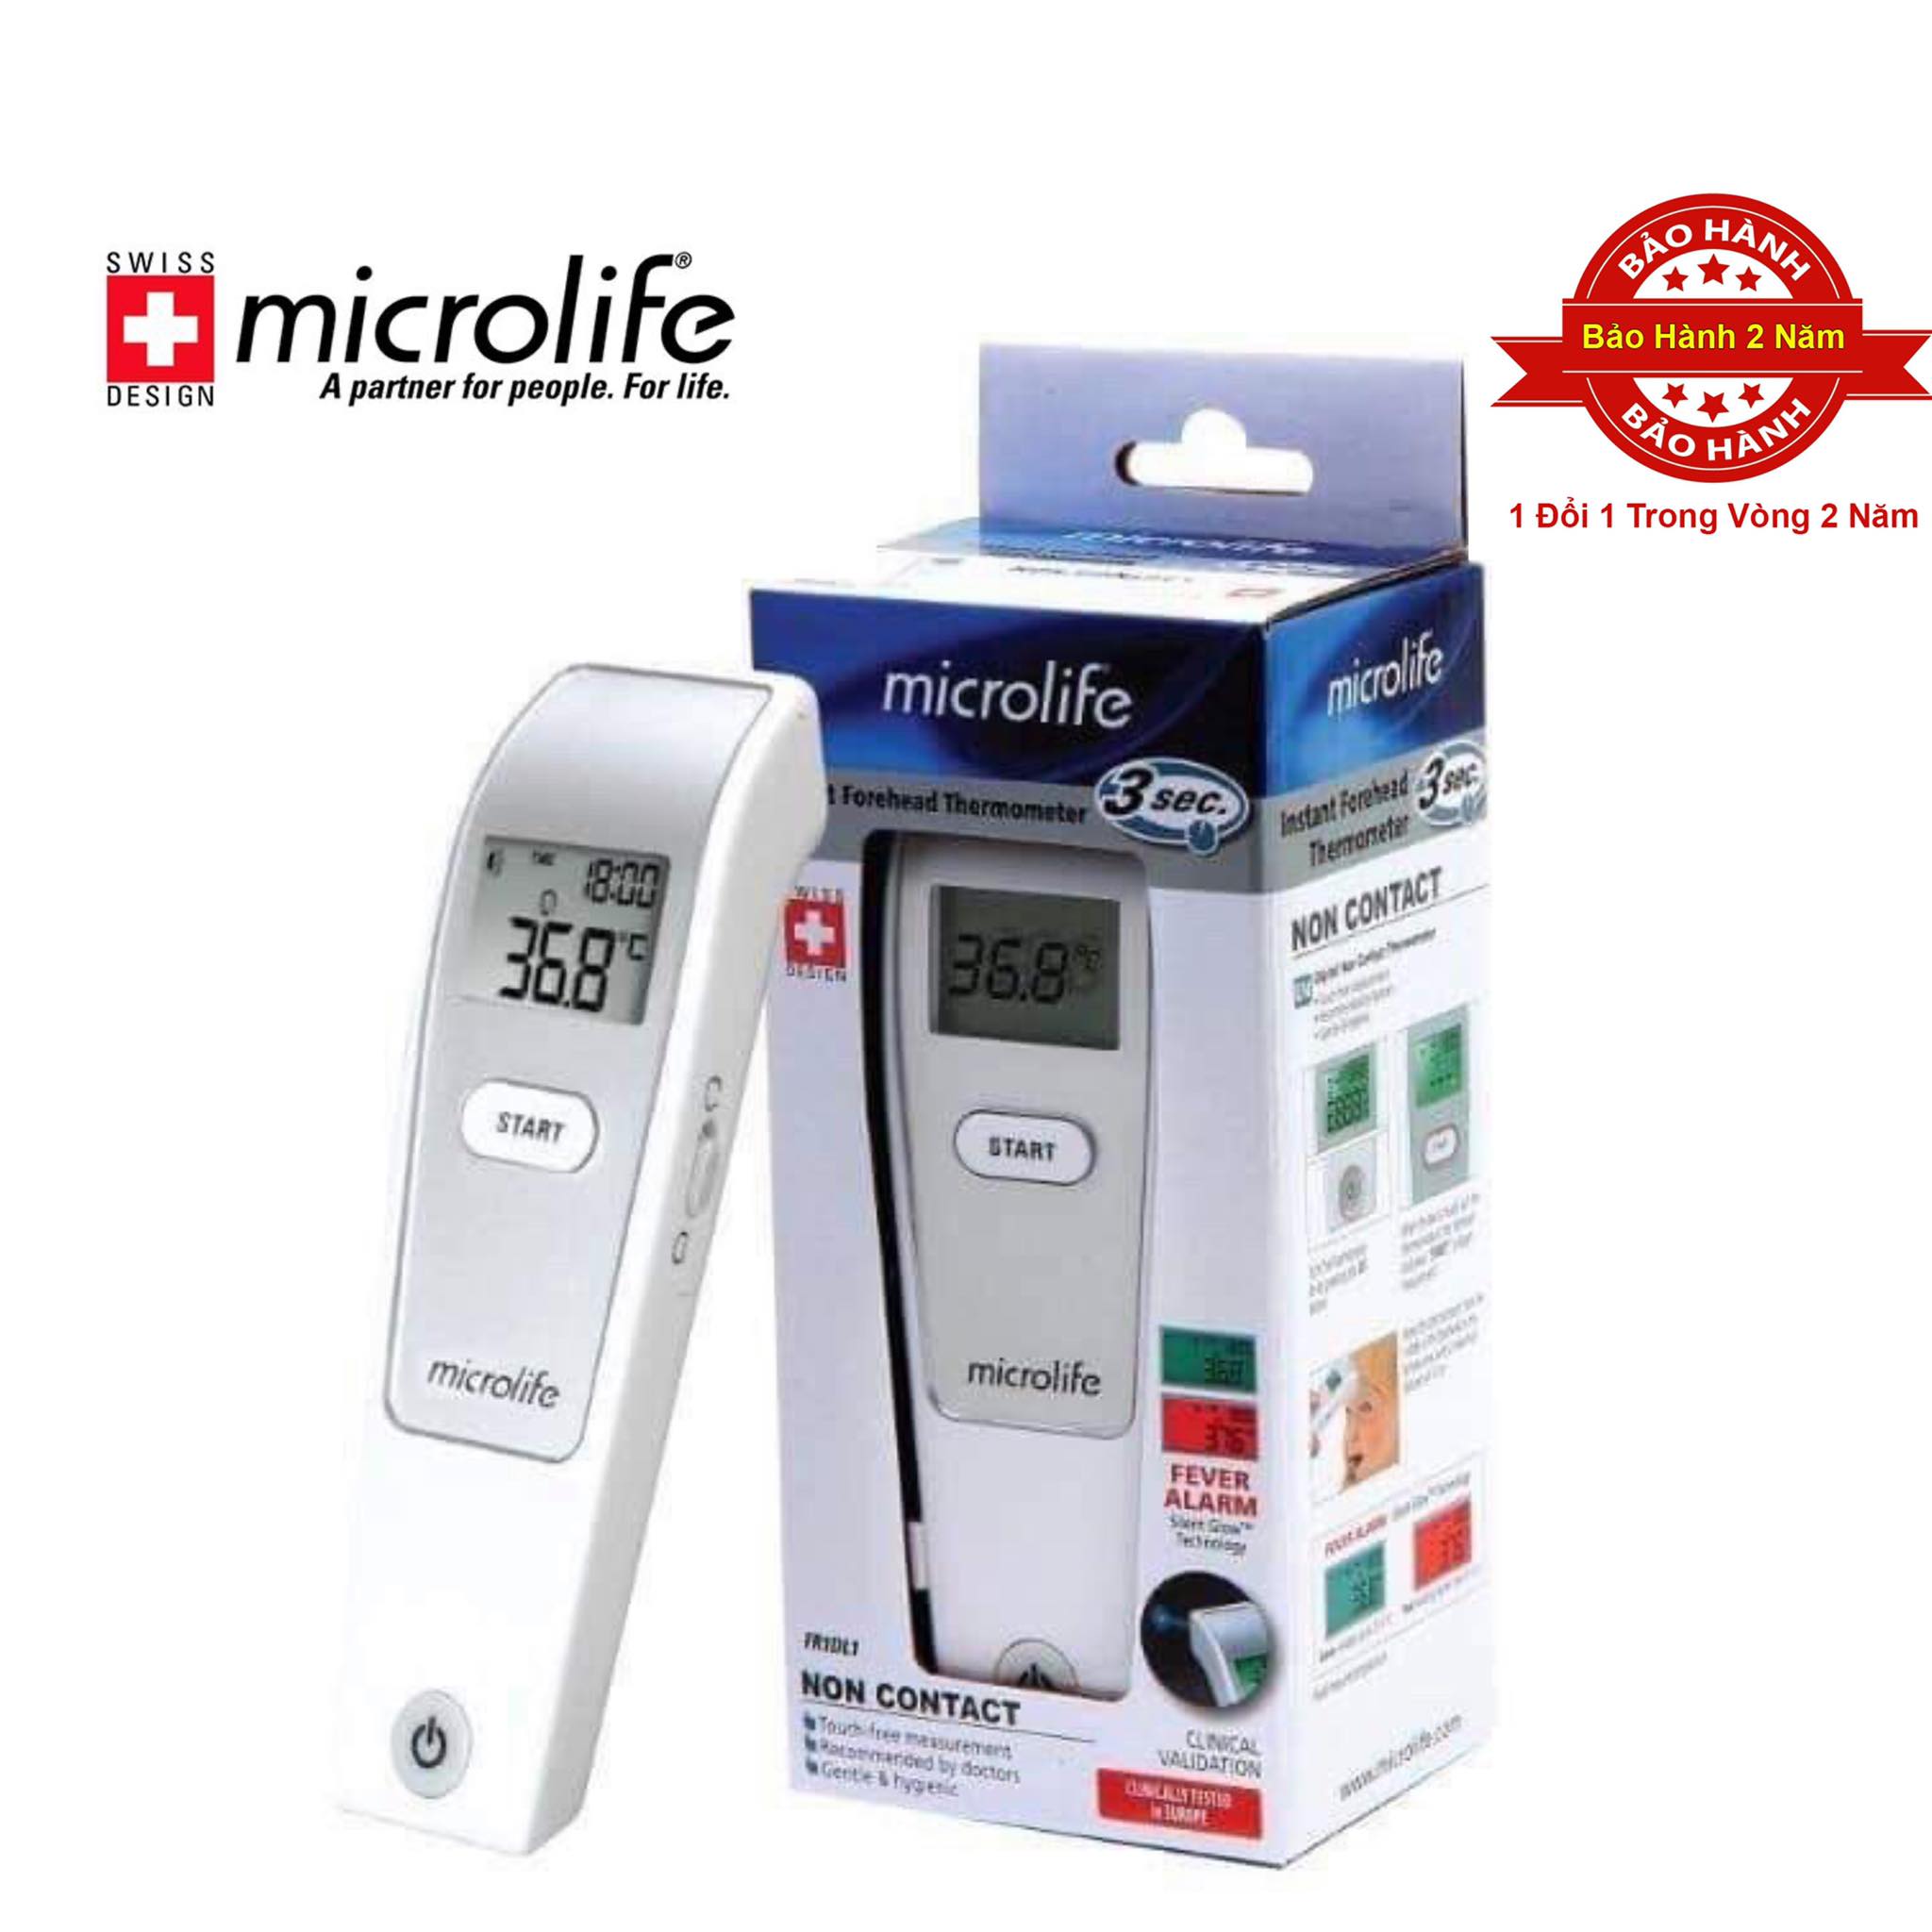 Nhiệt kế điện tử đo trán Microlife FR1MF1